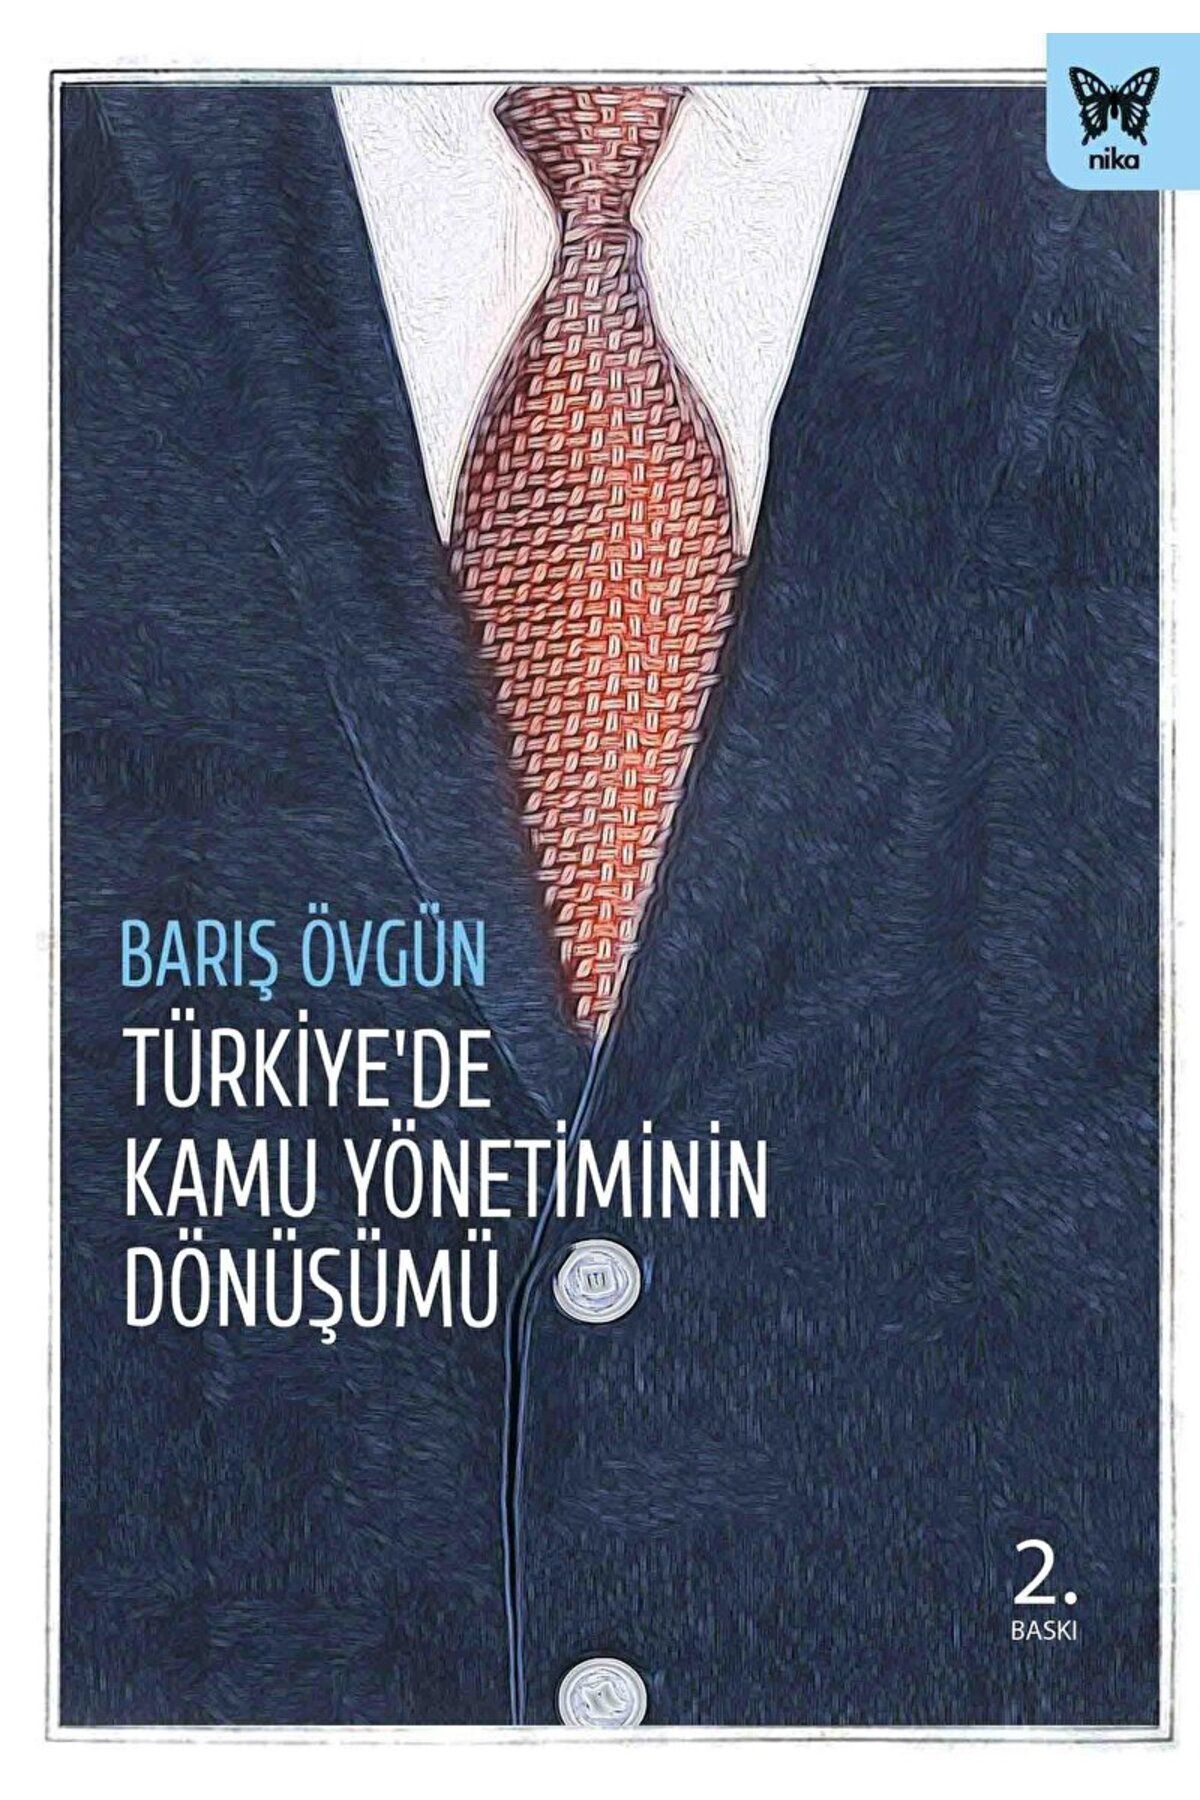 Nika Yayınevi Türkiye'de Kamu Yönetiminin Dönüşümü / Barış Övgün / Nika Yayınevi / 9786058646360